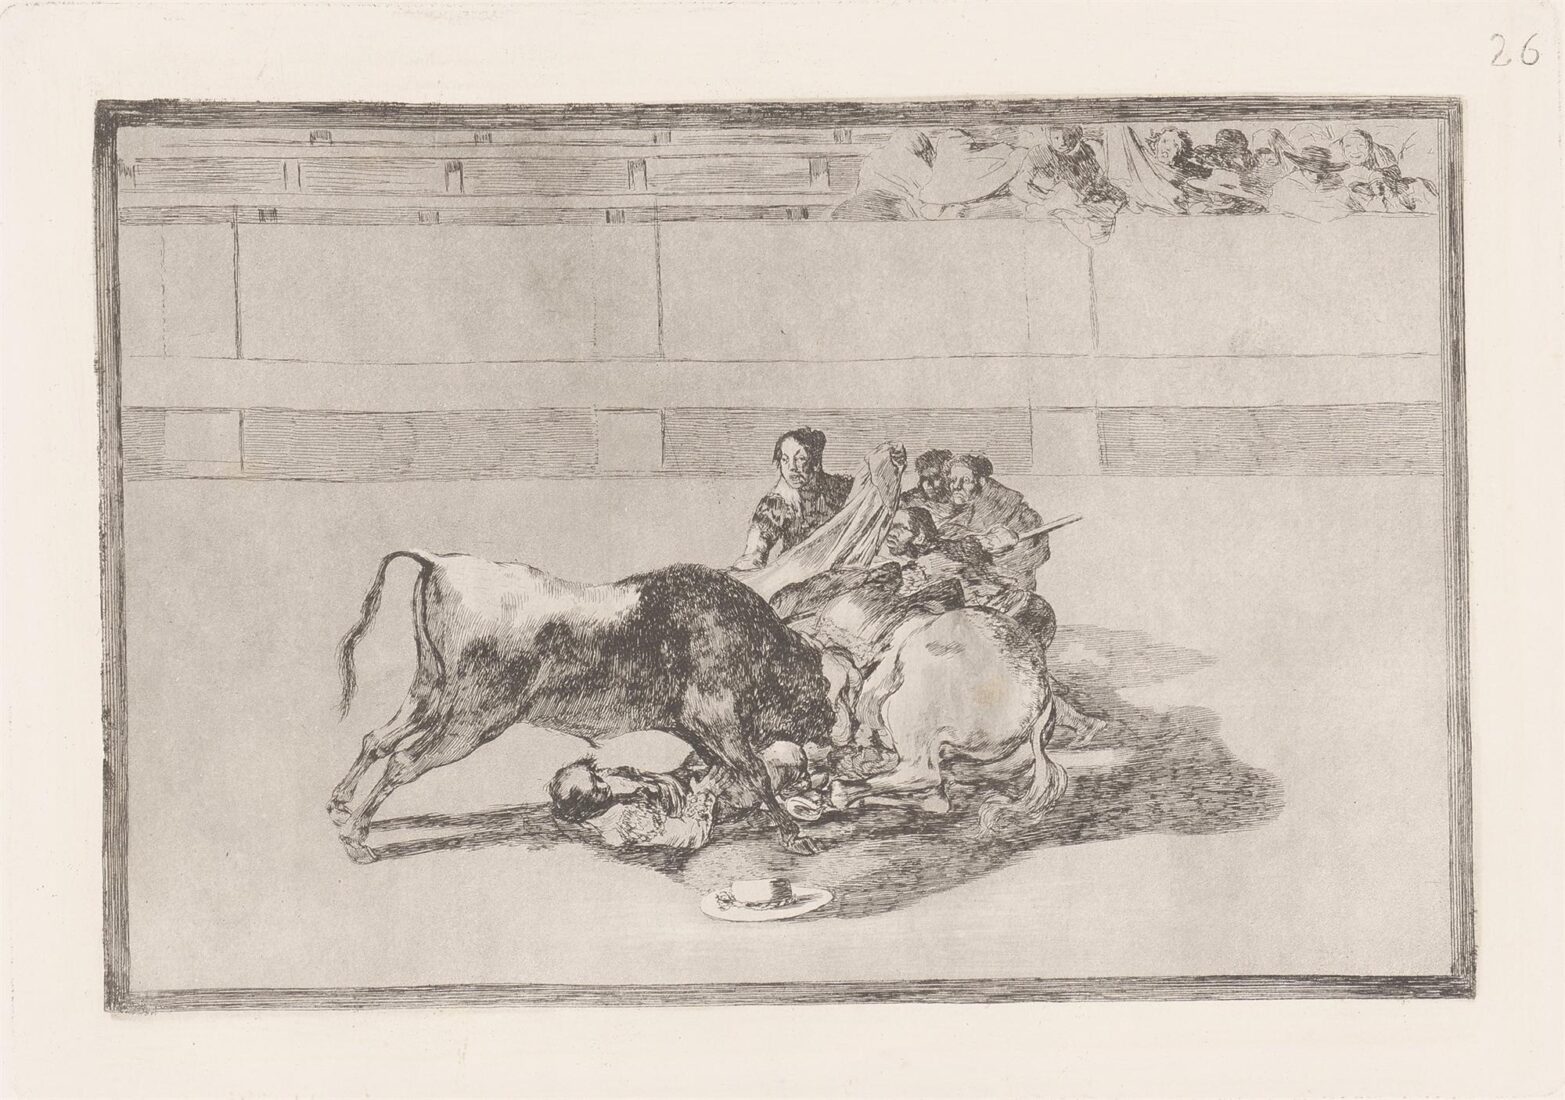 Ένας πικαδόρ πέφτει από το άλογο του κάτω από τον ταύρο - Goya y Lucientes Francisco